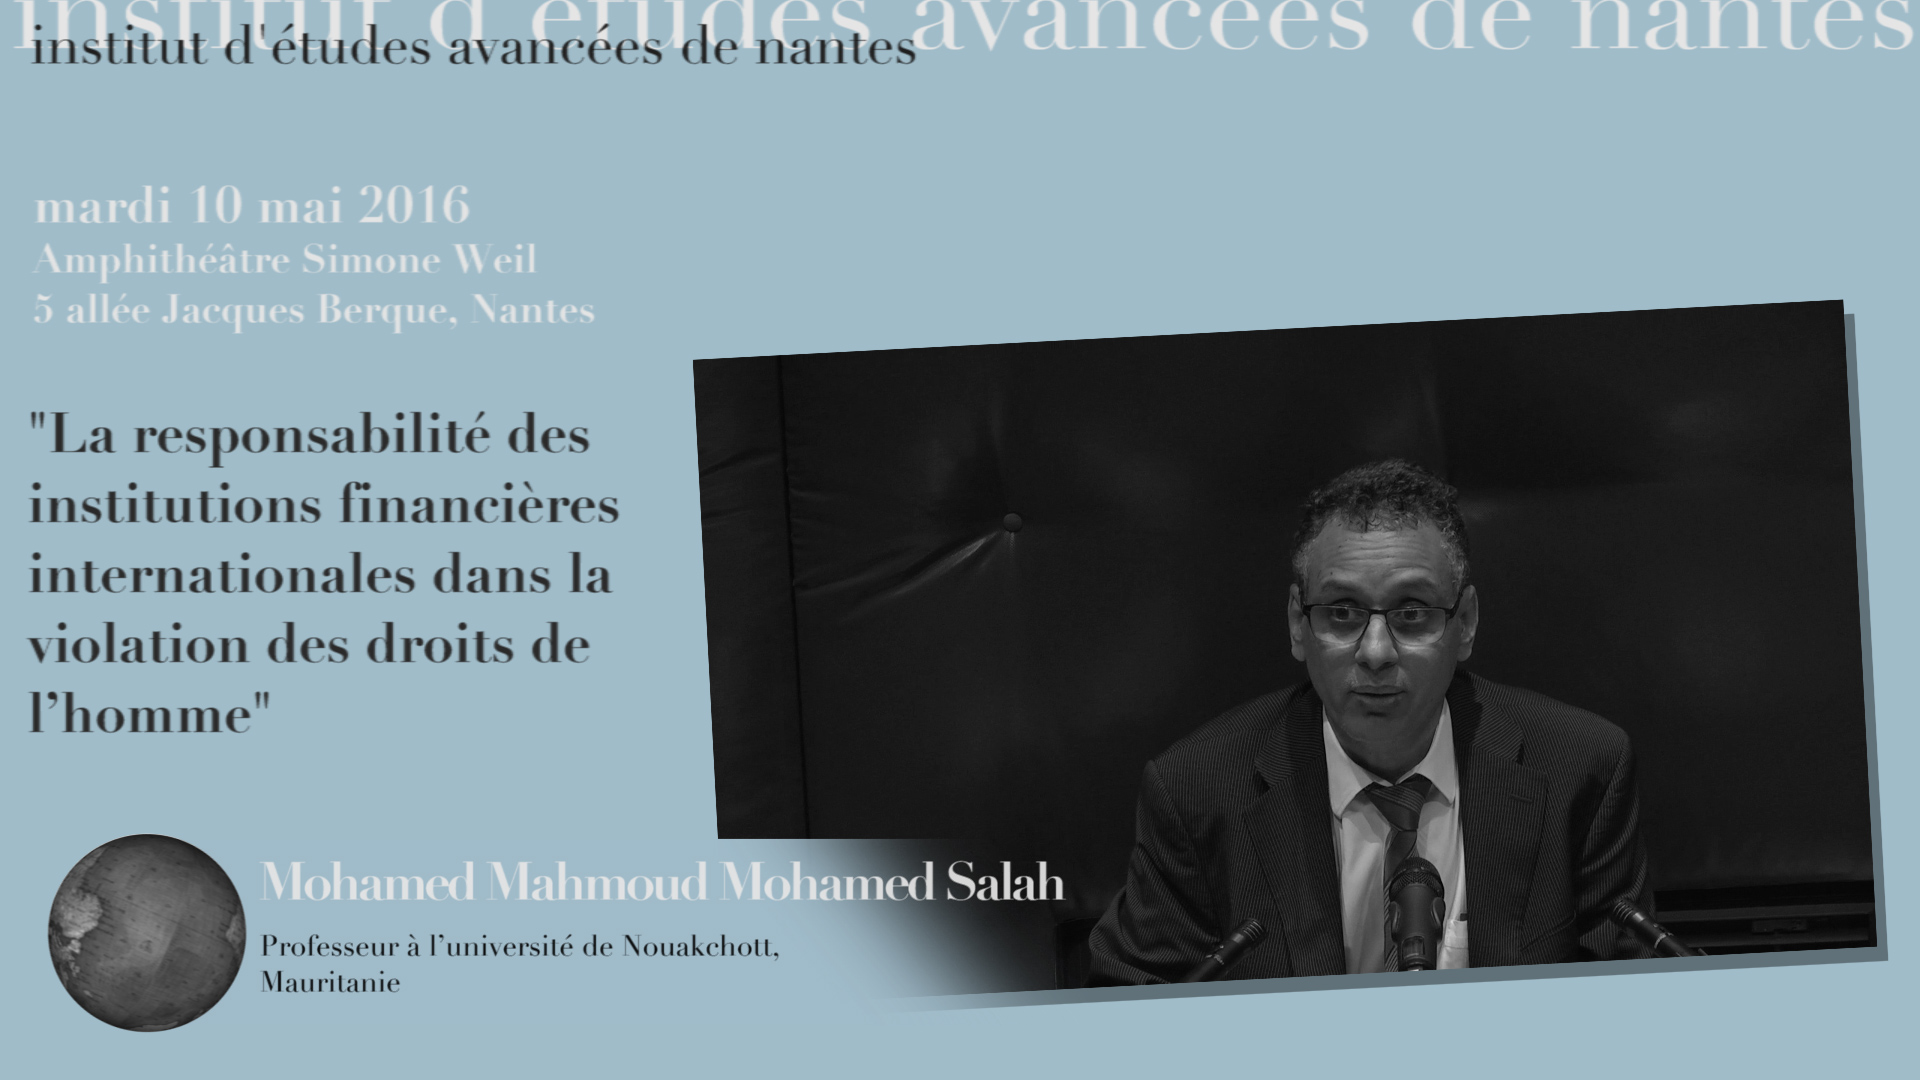 Conférence de Mohamed Mahmoud Mohamed Salah : "La responsabilité des institutions financières internationales dans la violation des droits de l’homme"